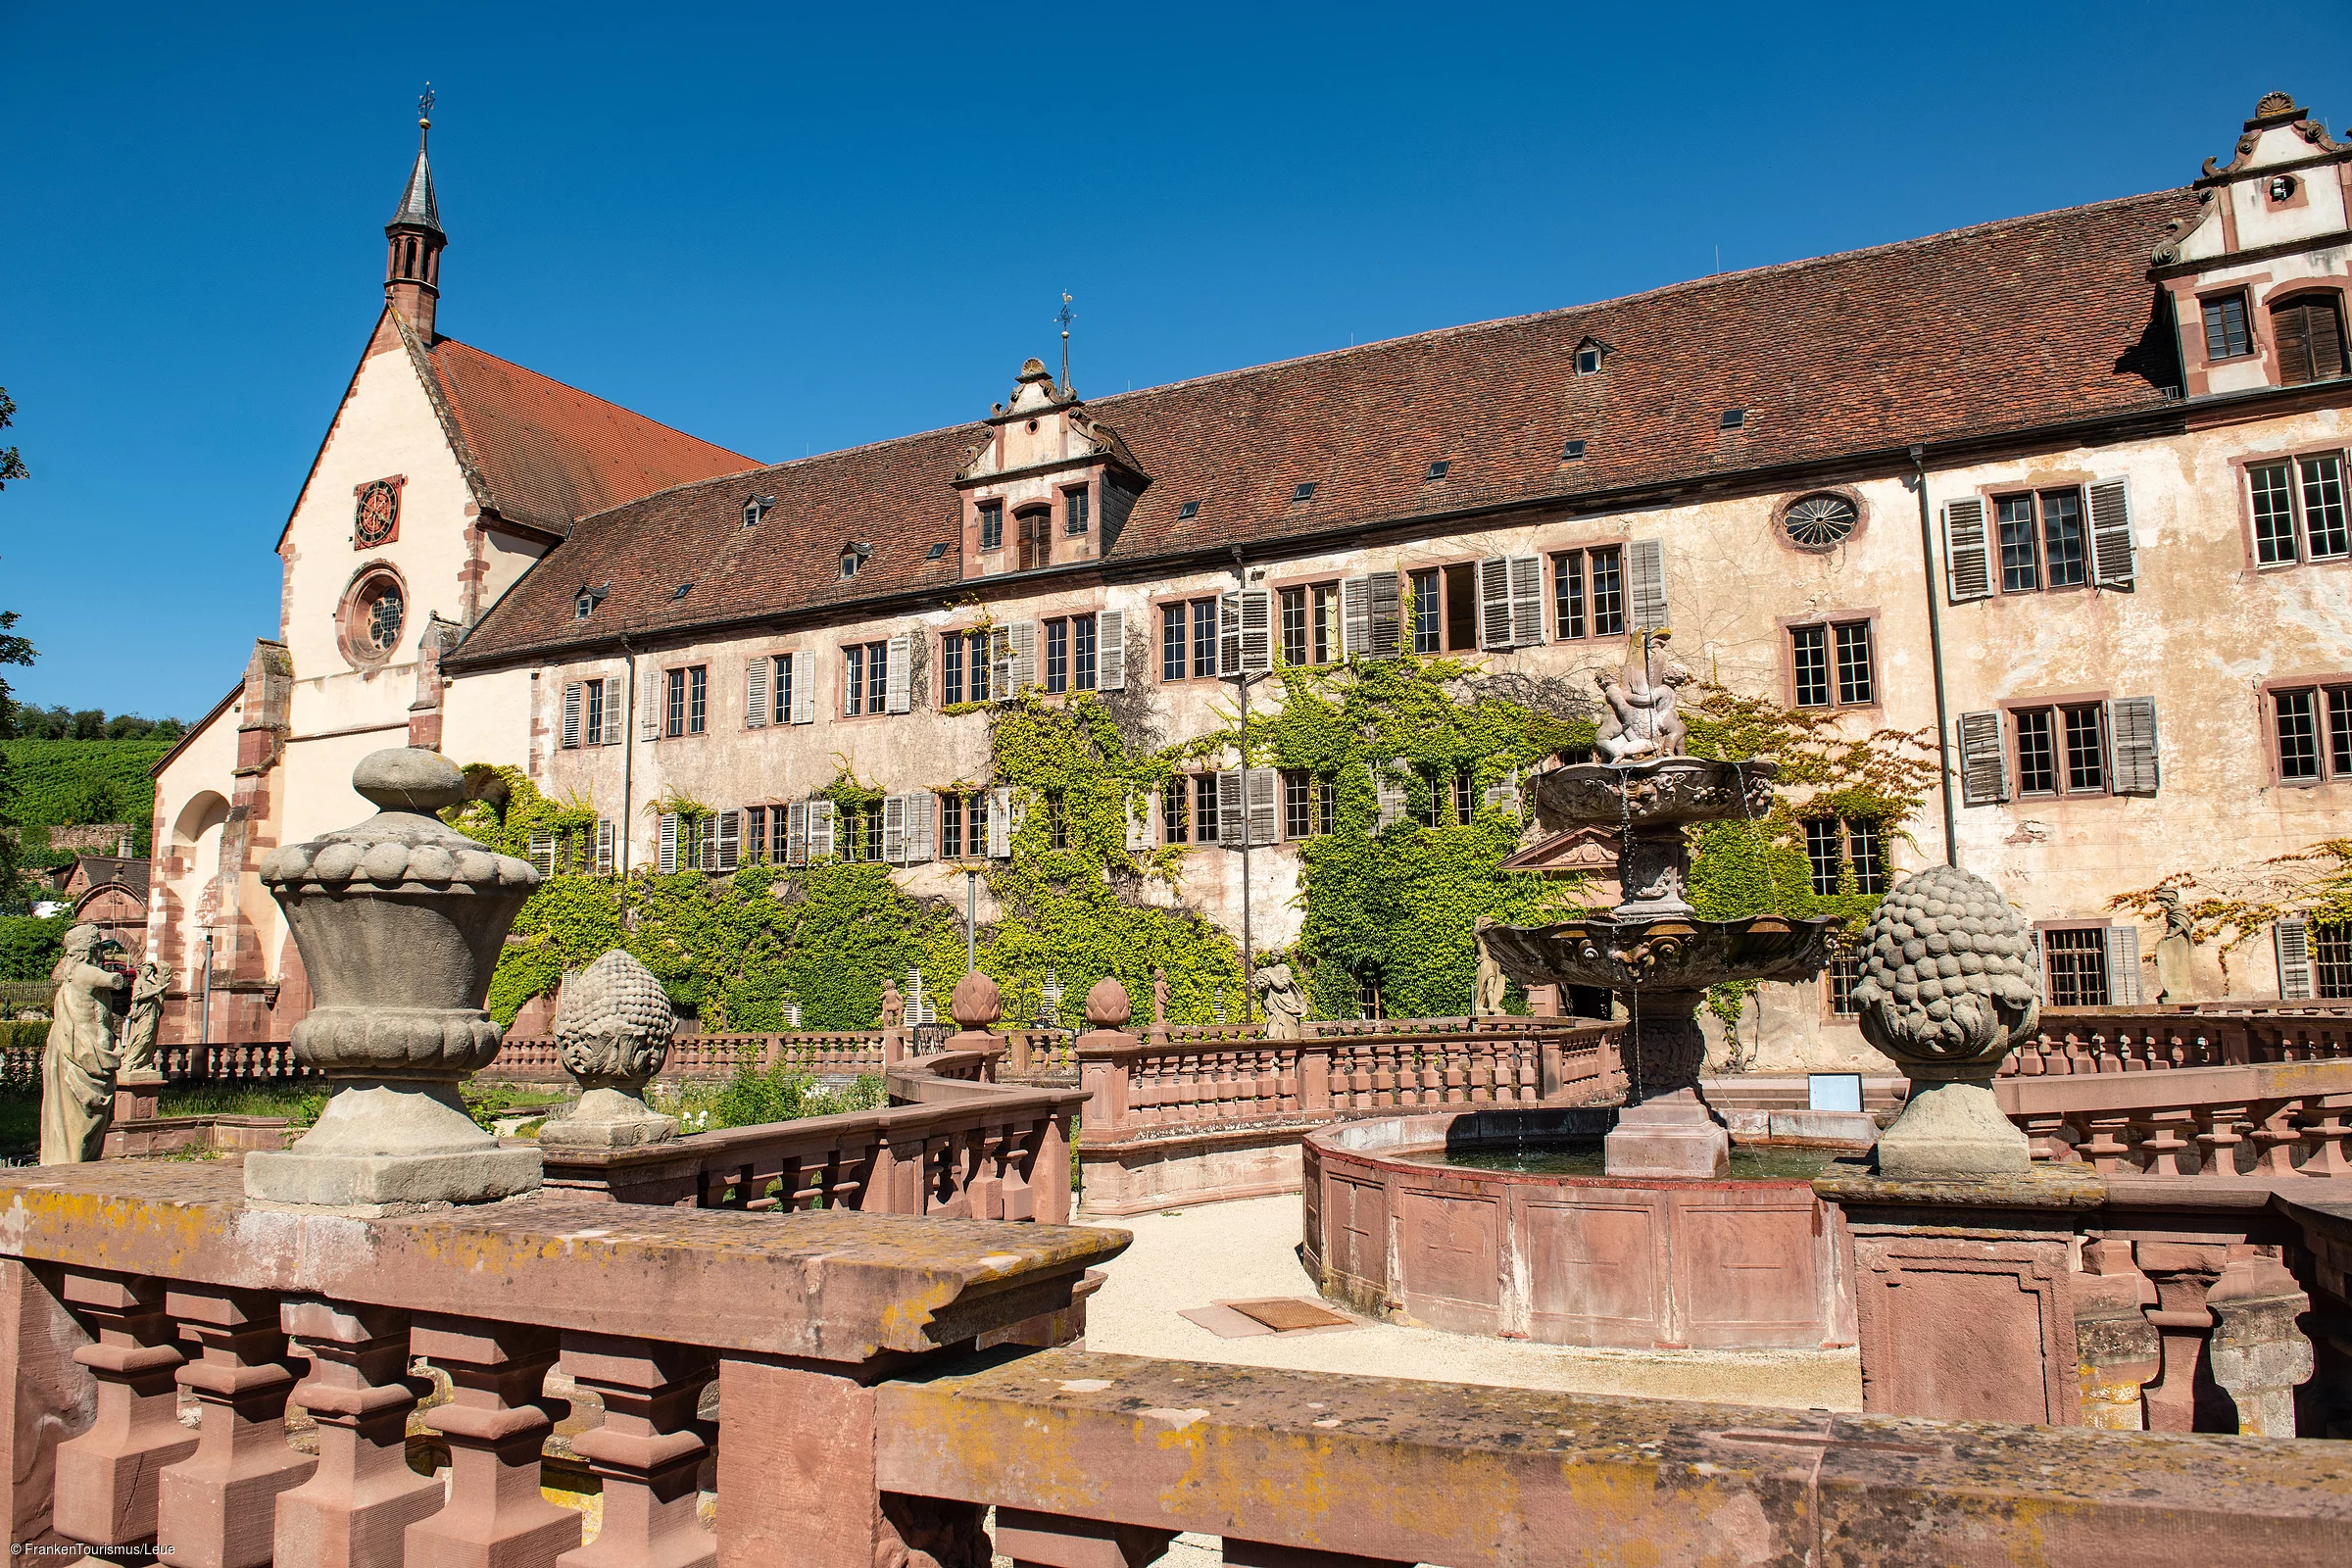 Kloster Bronnbach mit barockem Abteigarten (Wertheim/Liebliches Taubertal)